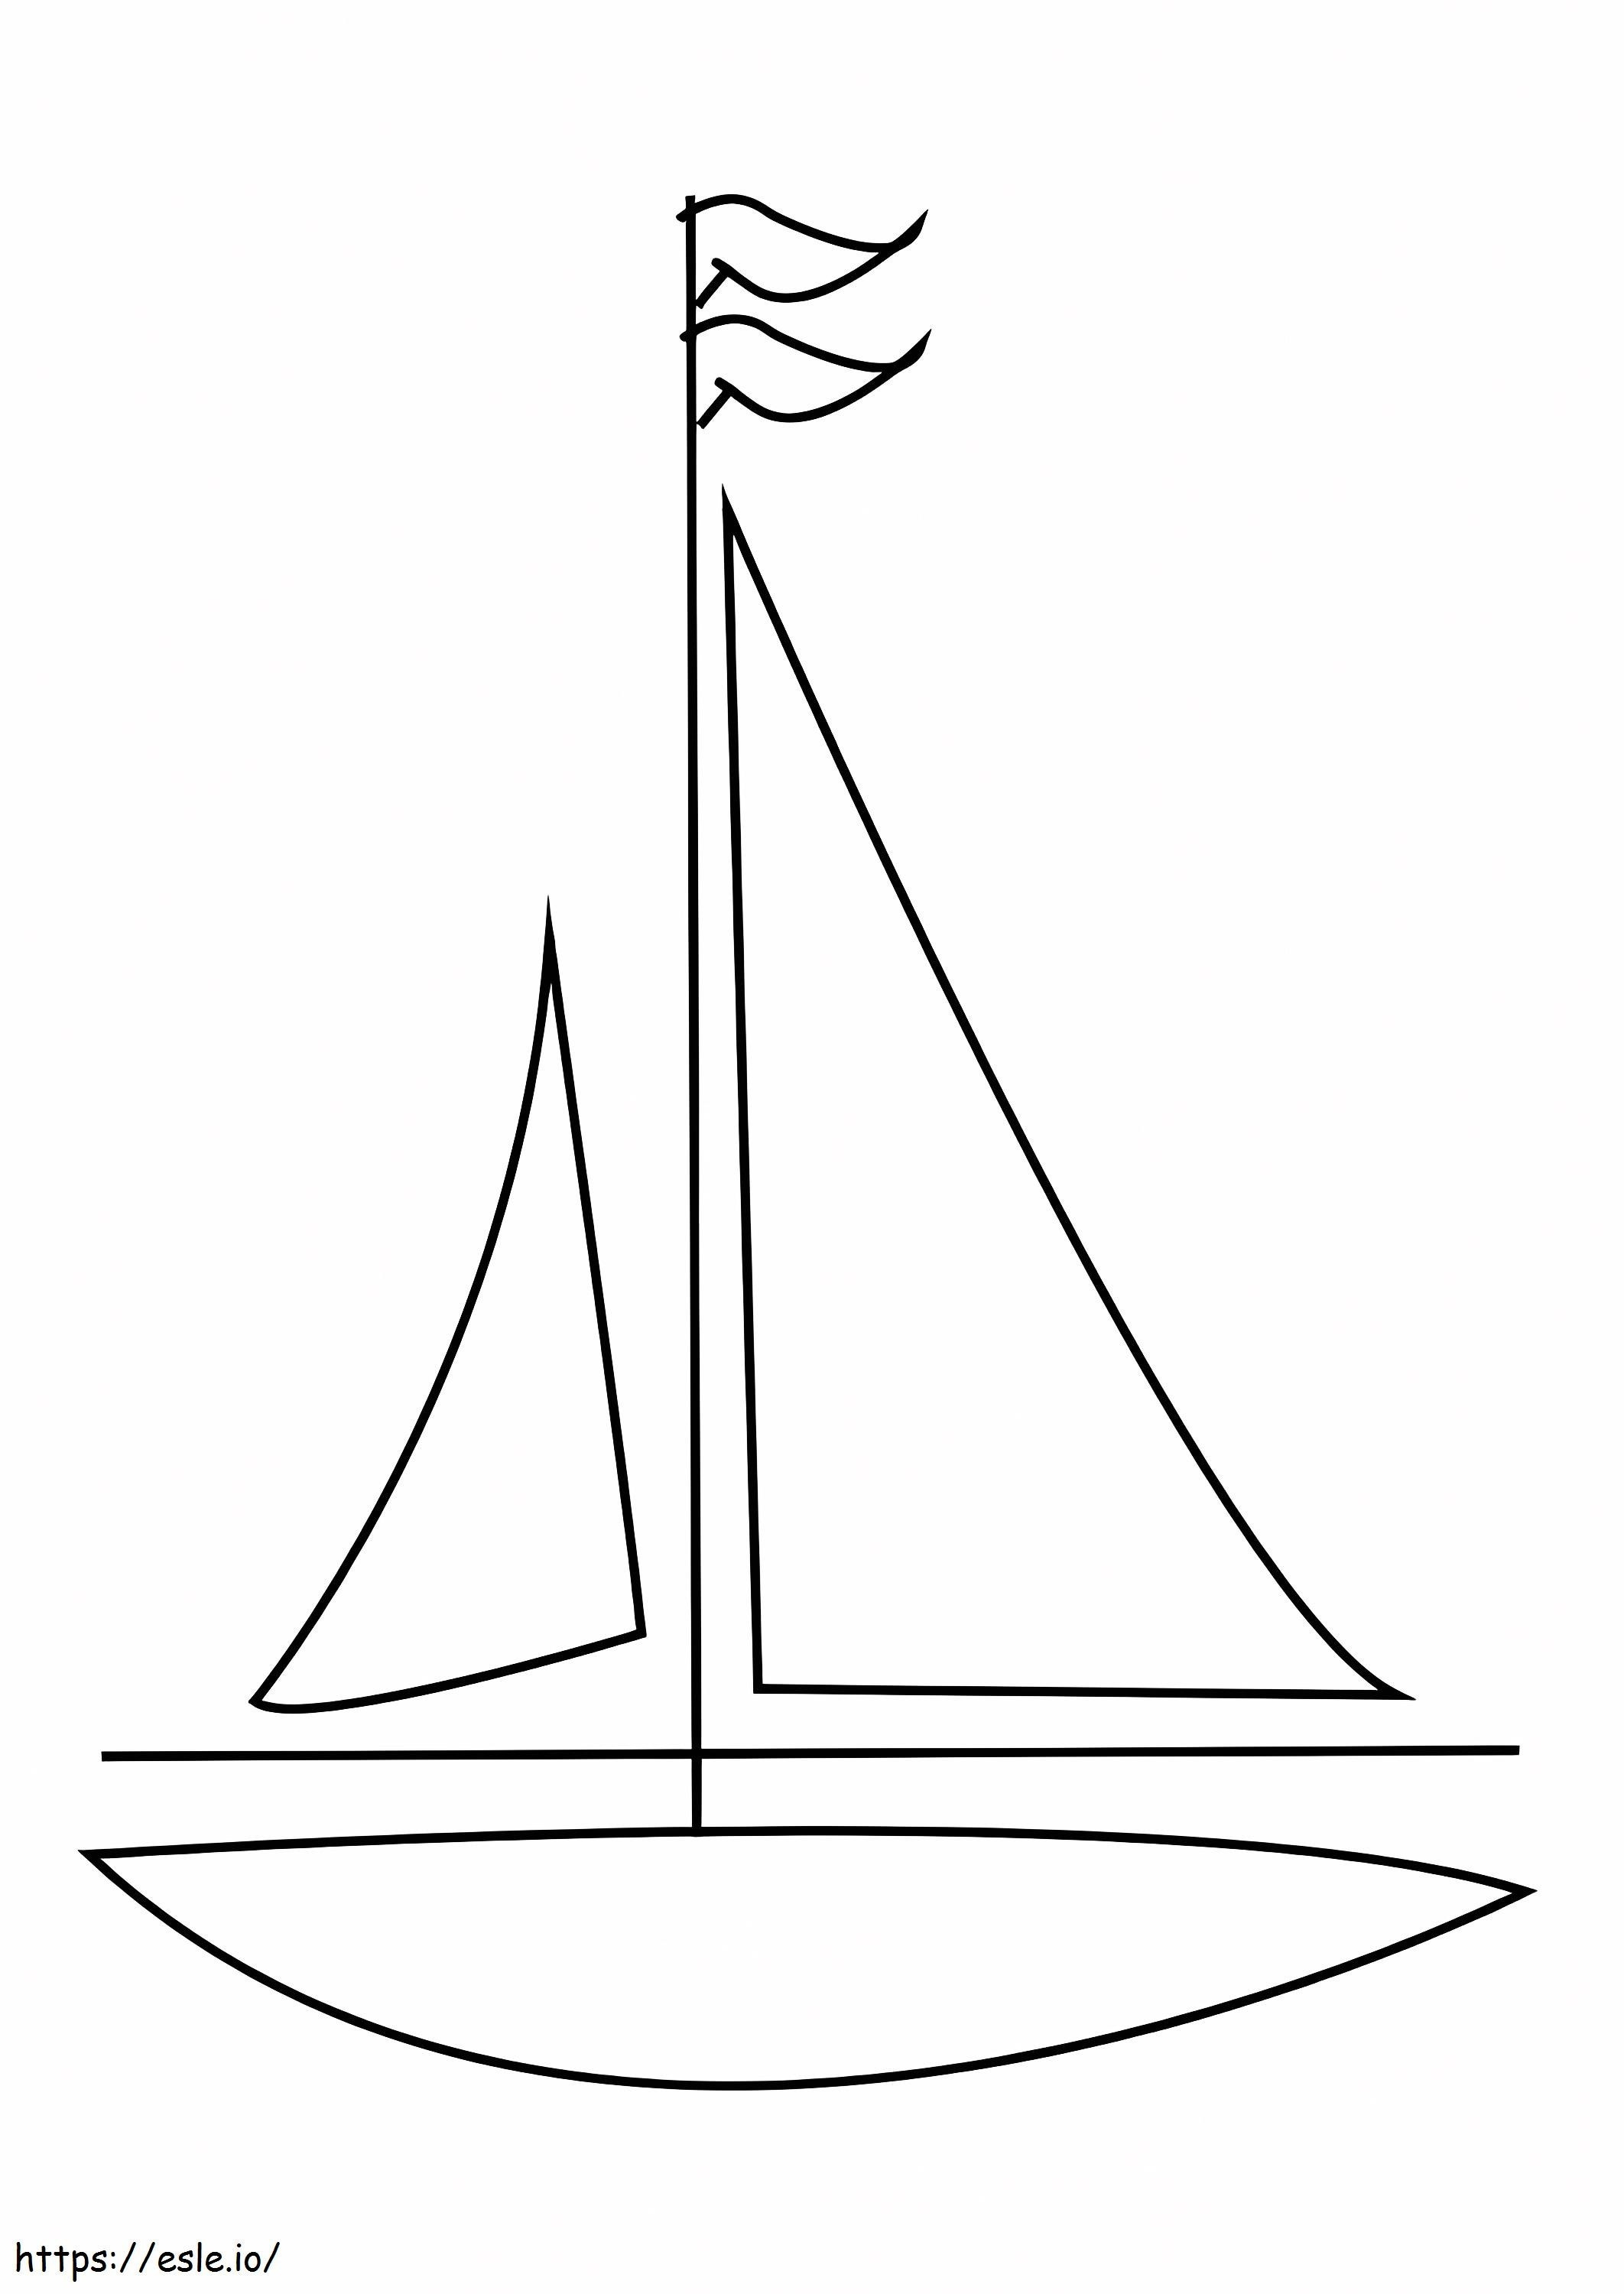 Eenvoudige zeilboot kleurplaat kleurplaat